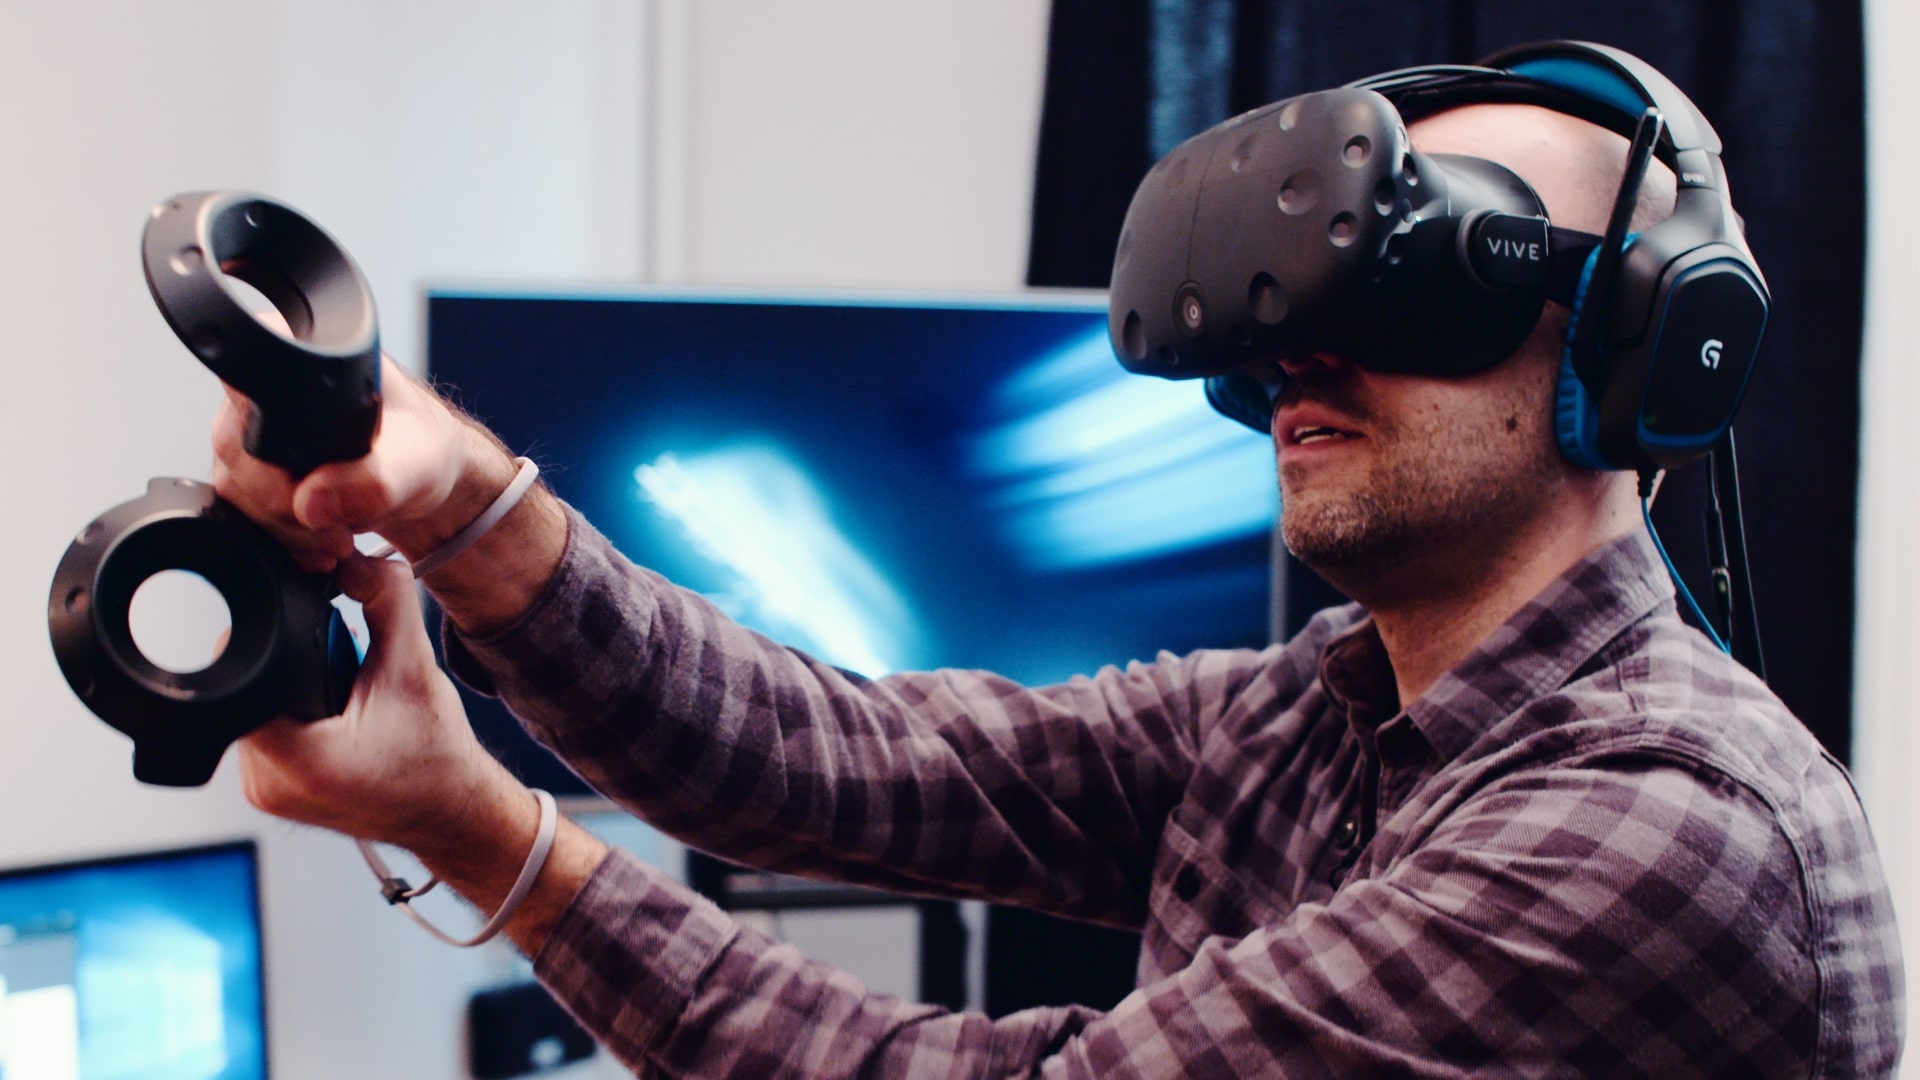 Game kết hợp công nghệ VR